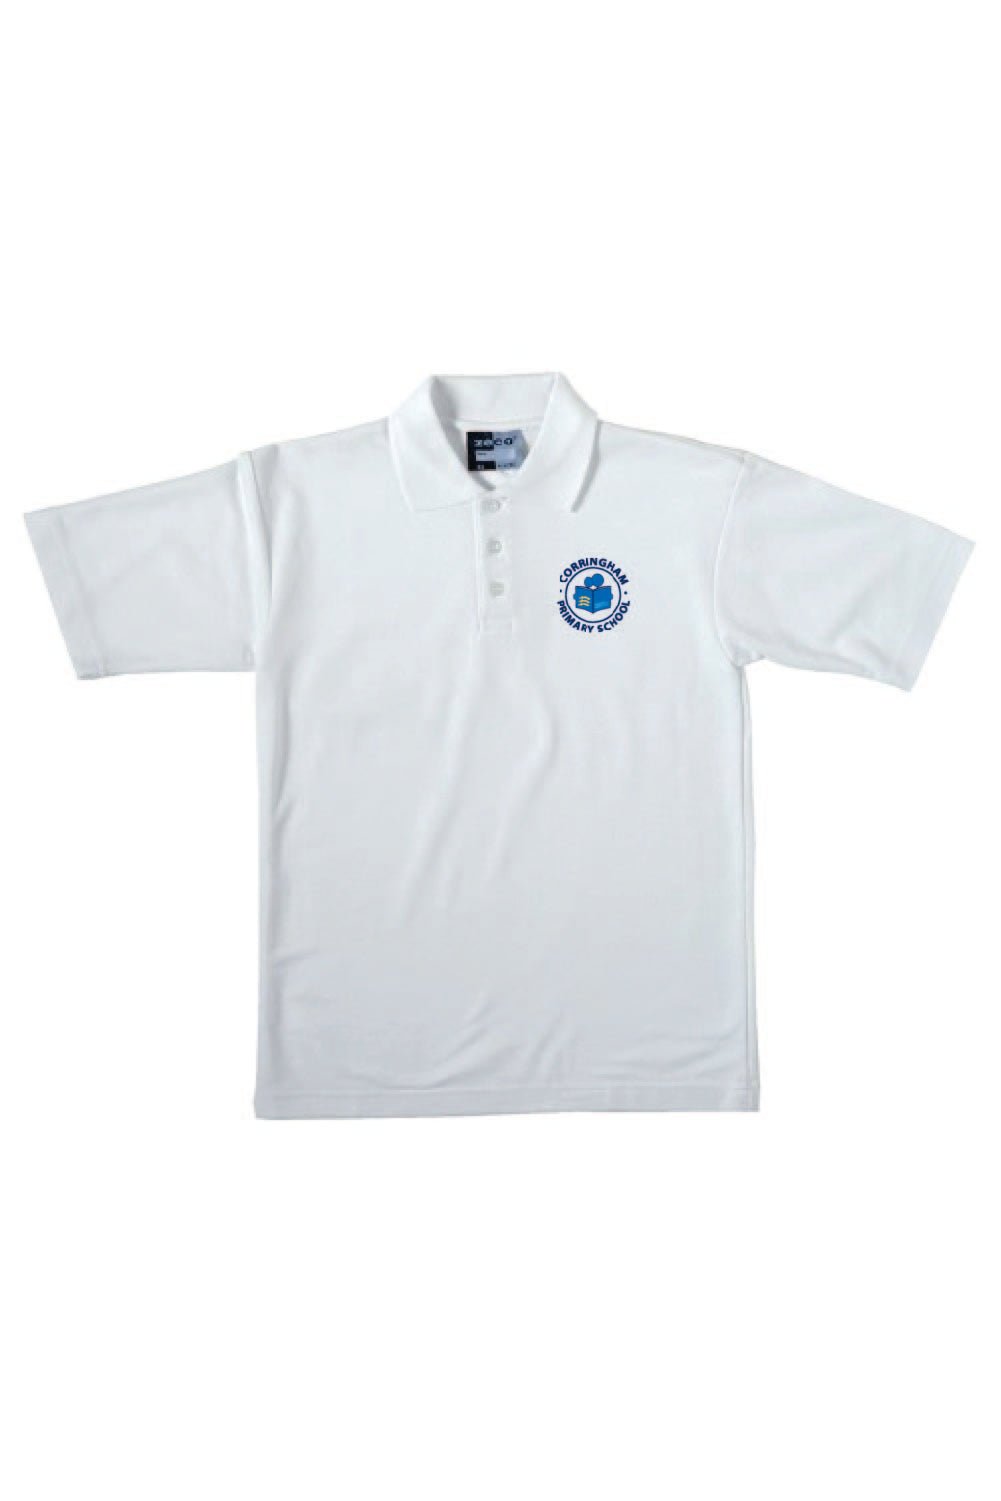 Corringham Primary White School Polo - Uniformwise Schoolwear